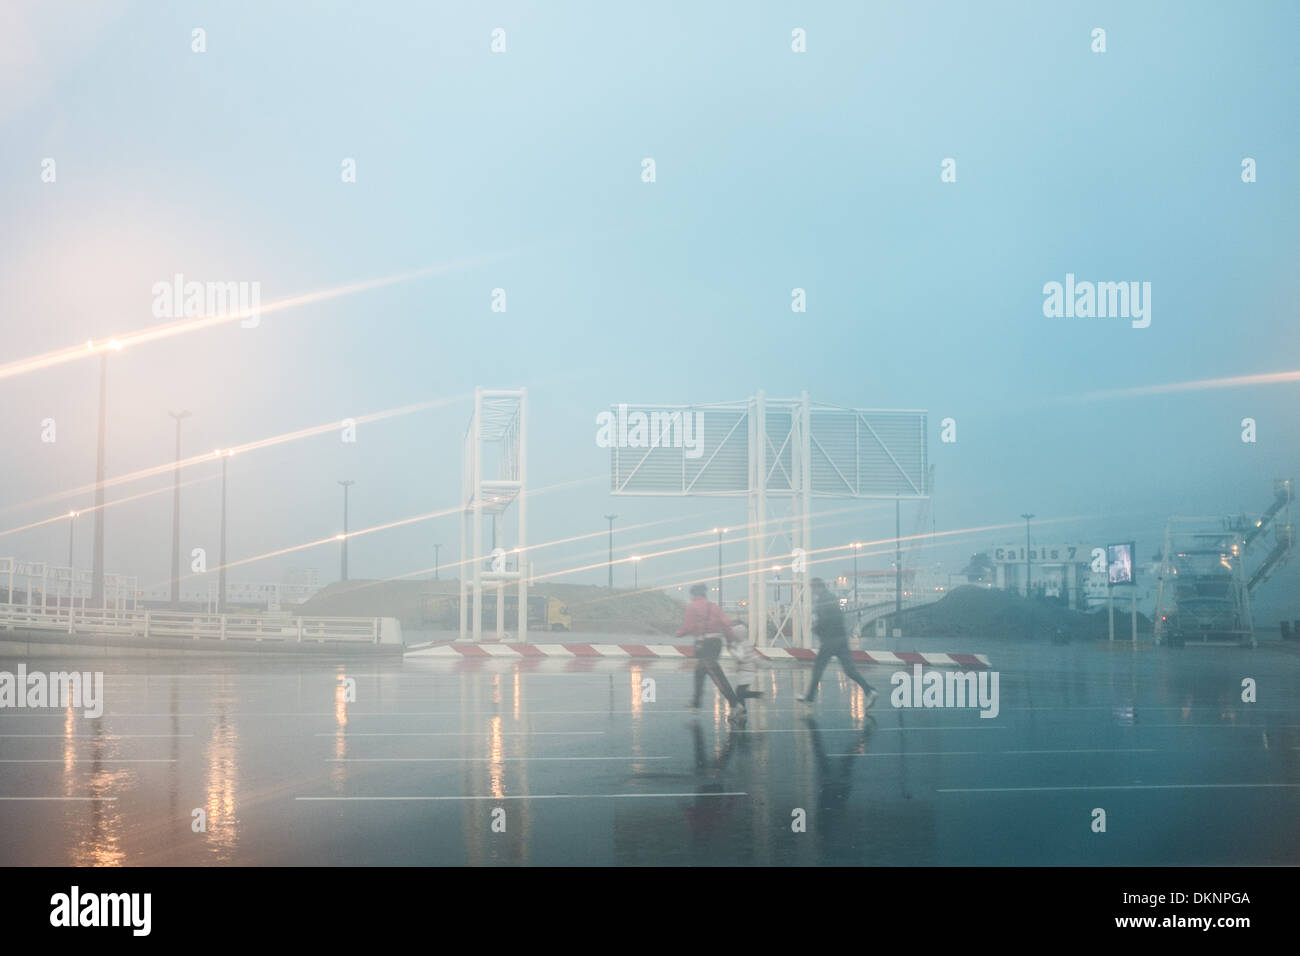 2 Personas correr bajo la lluvia, el puerto de Calais, Francia. Foto de stock